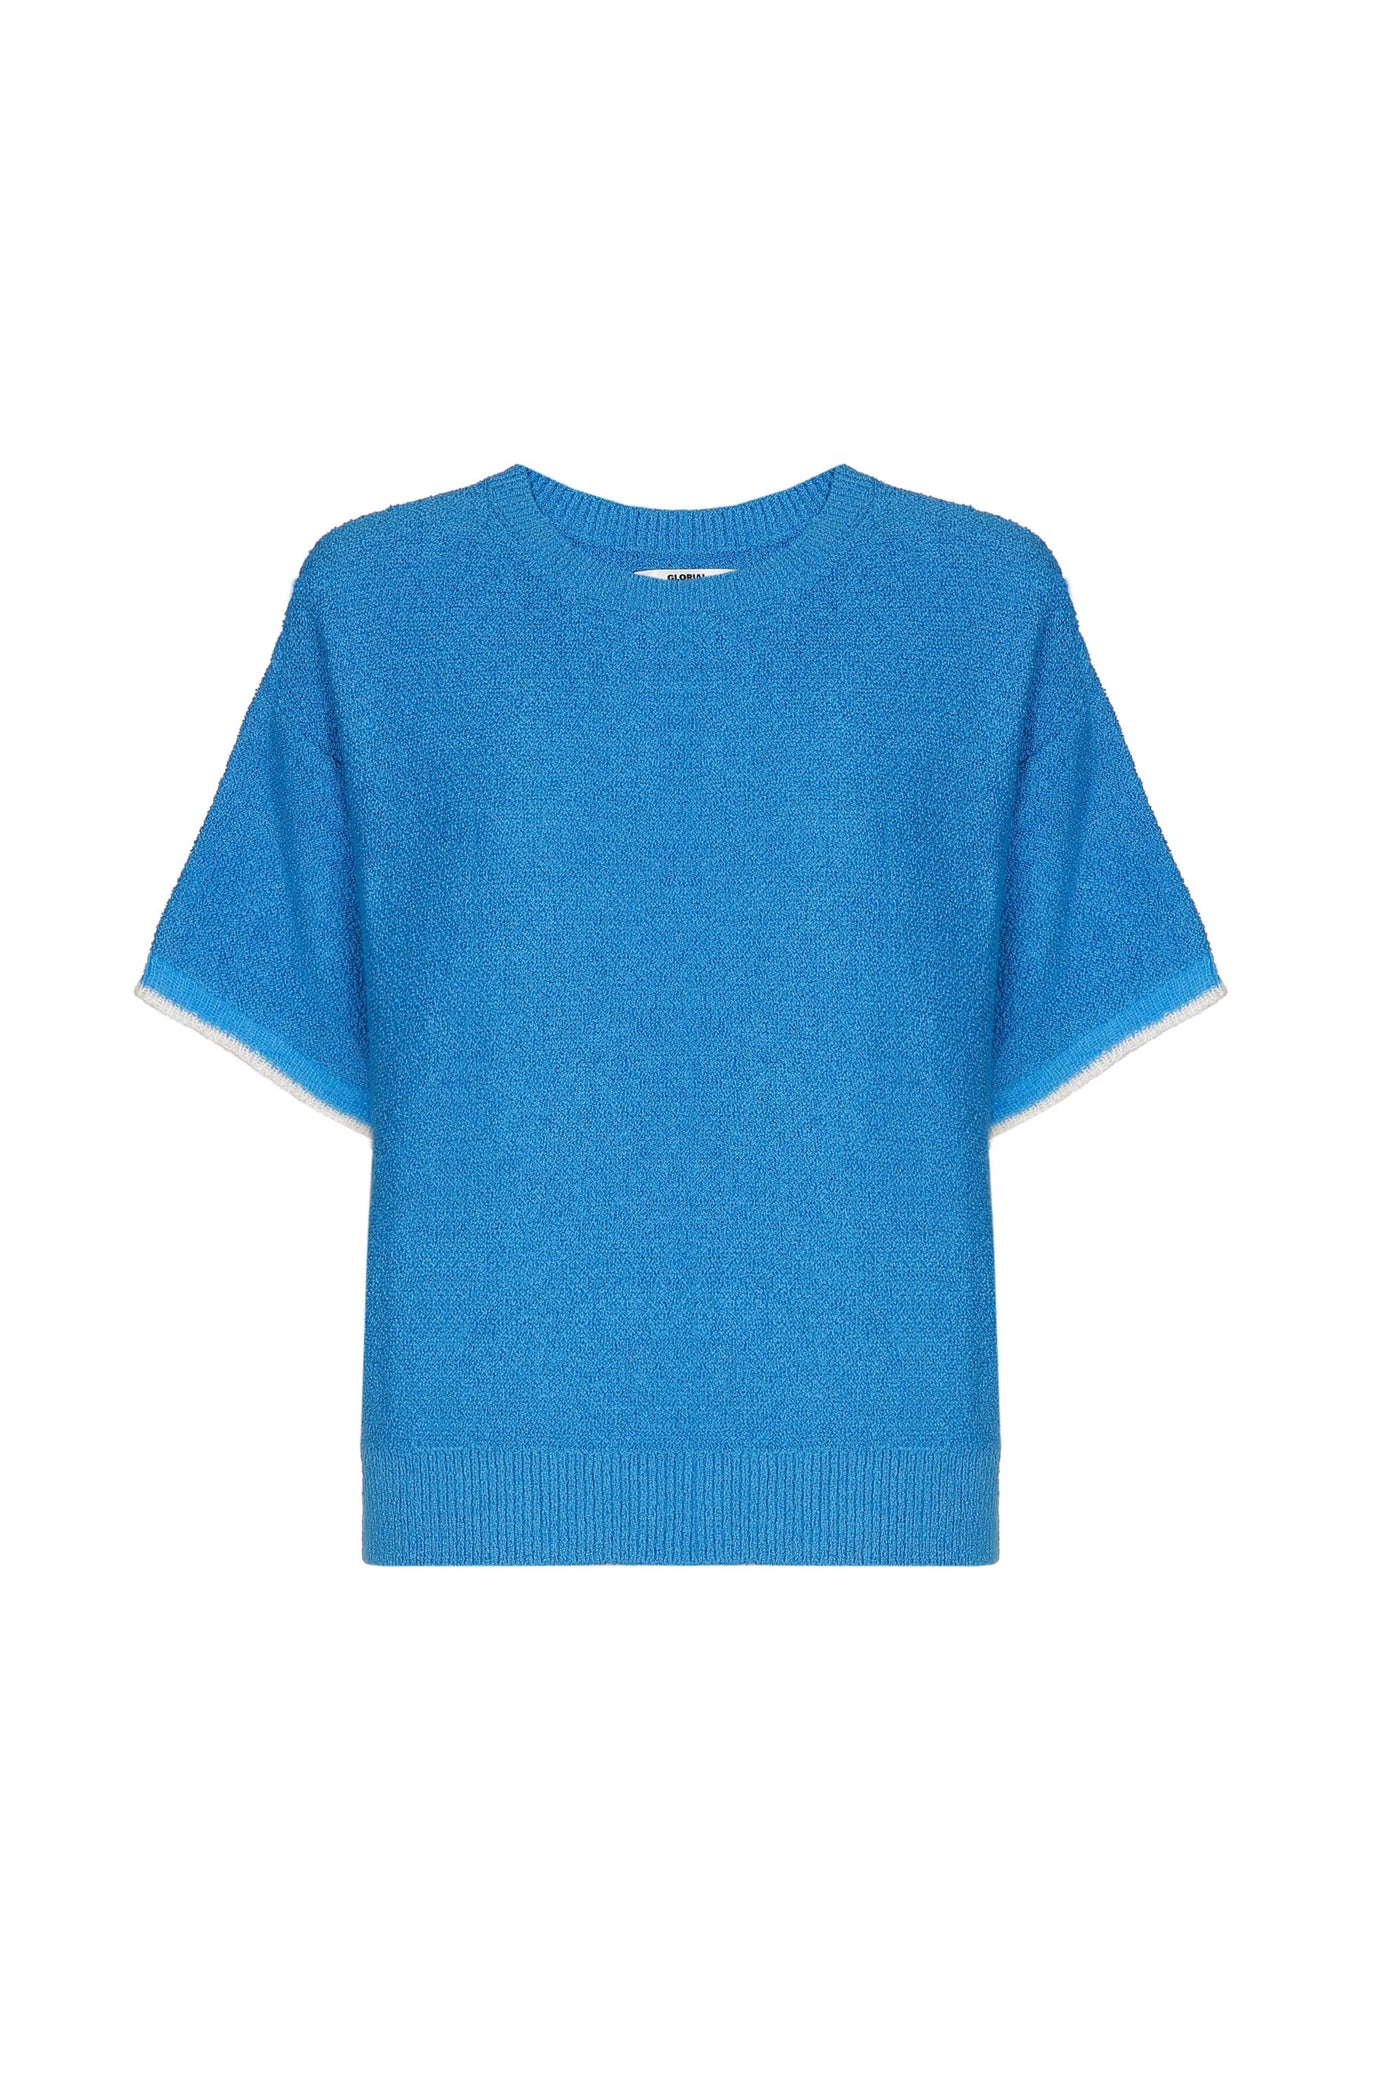 Cheeky T-Shirt Azure